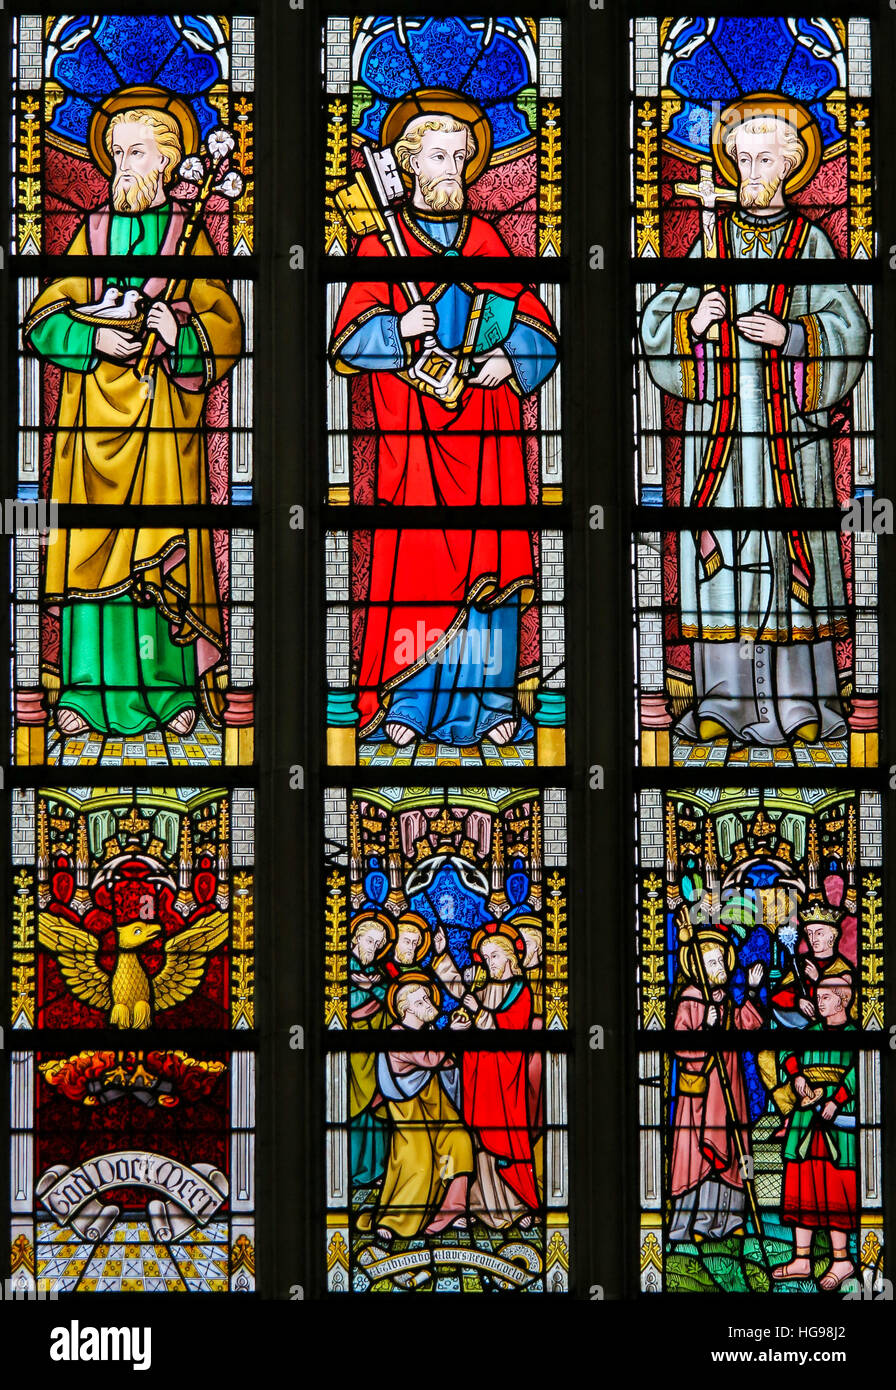 Vitrail représentant Saint Joseph, Saint Pierre et Saint François Xavier, dans la Cathédrale de Saint-bavon à Gand, Flandre orientale, Belgique. Banque D'Images